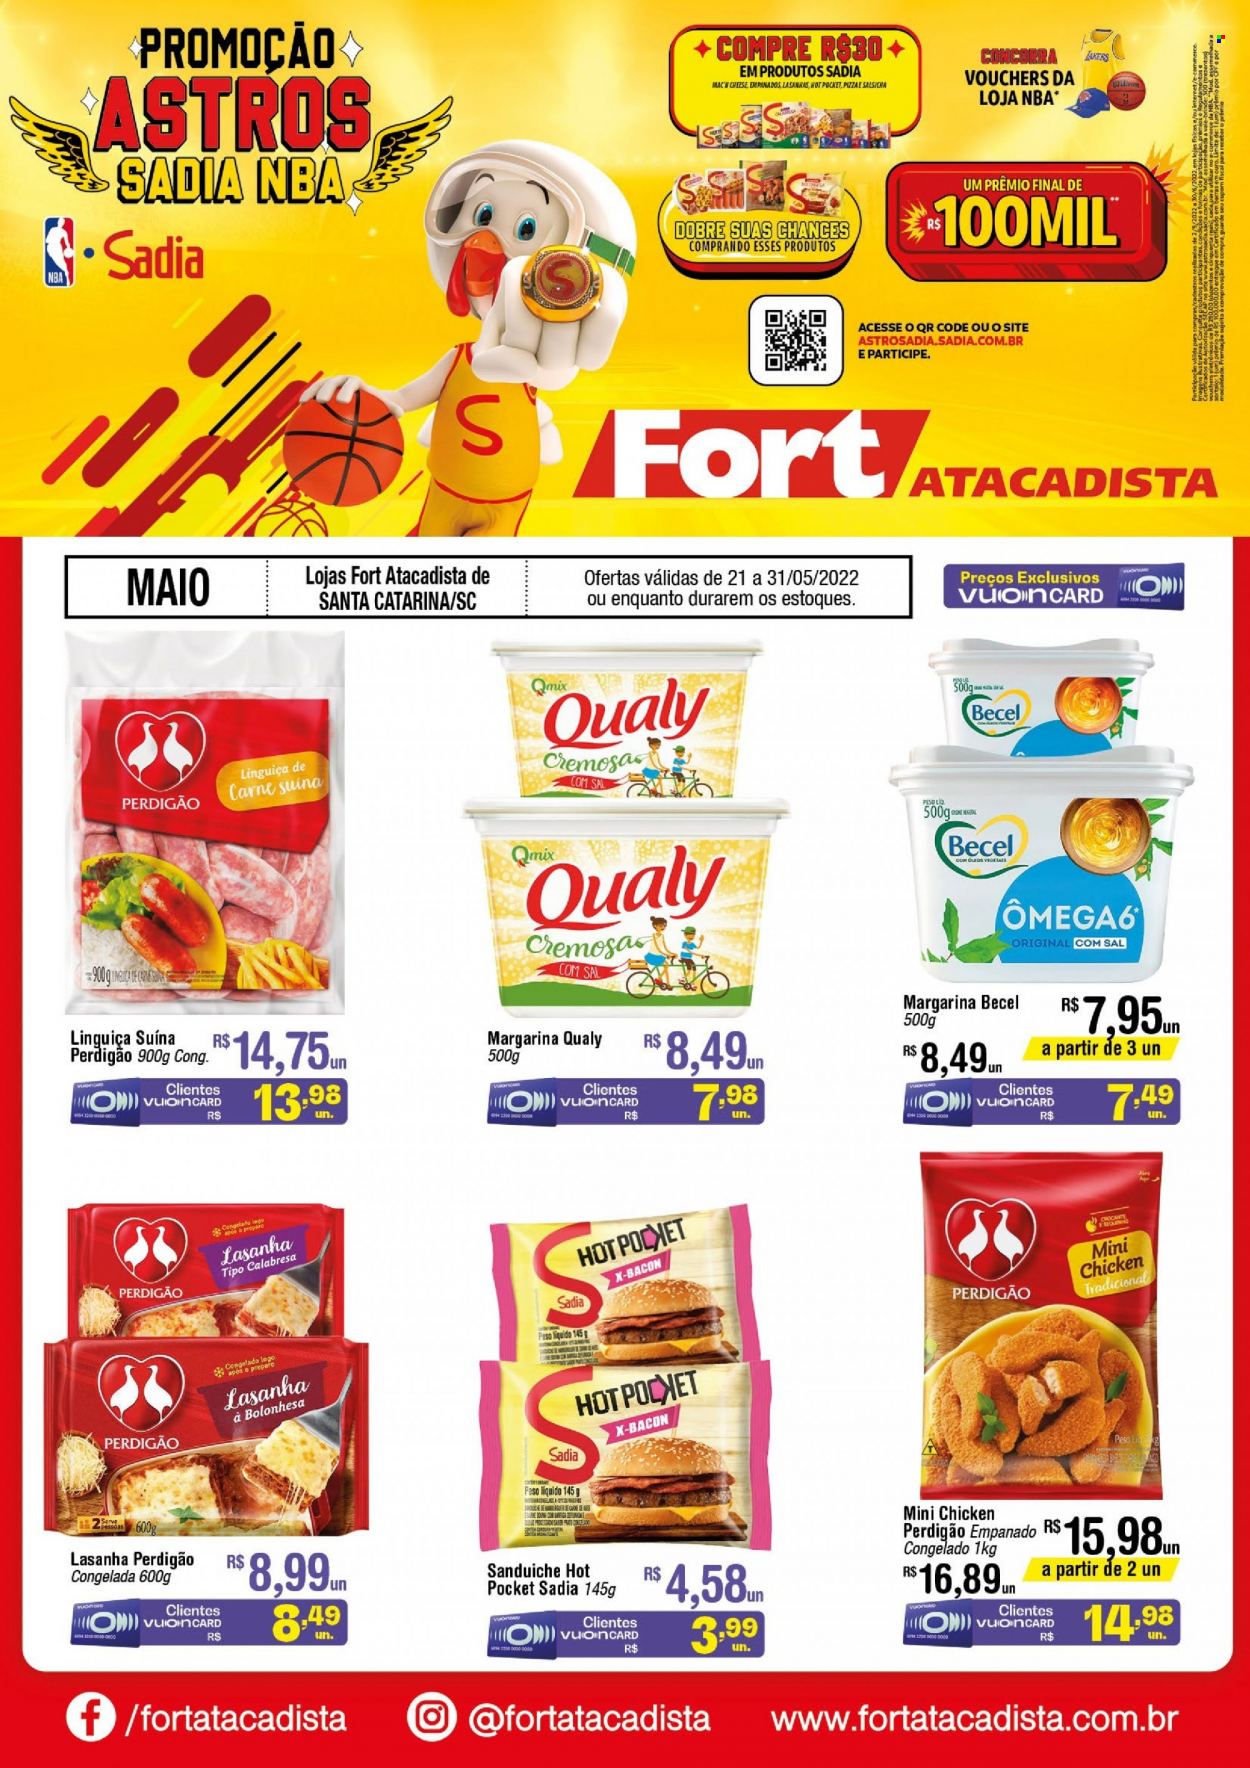 thumbnail - Folheto Fort Atacadista - 21/05/2022 - 31/05/2022 - Produtos em promoção - carne suína, sanduiche, Perdigão, pizza, lasanha, linguiça, salsicha, margarina, Becel, Qualy, LEGO. Página 1.